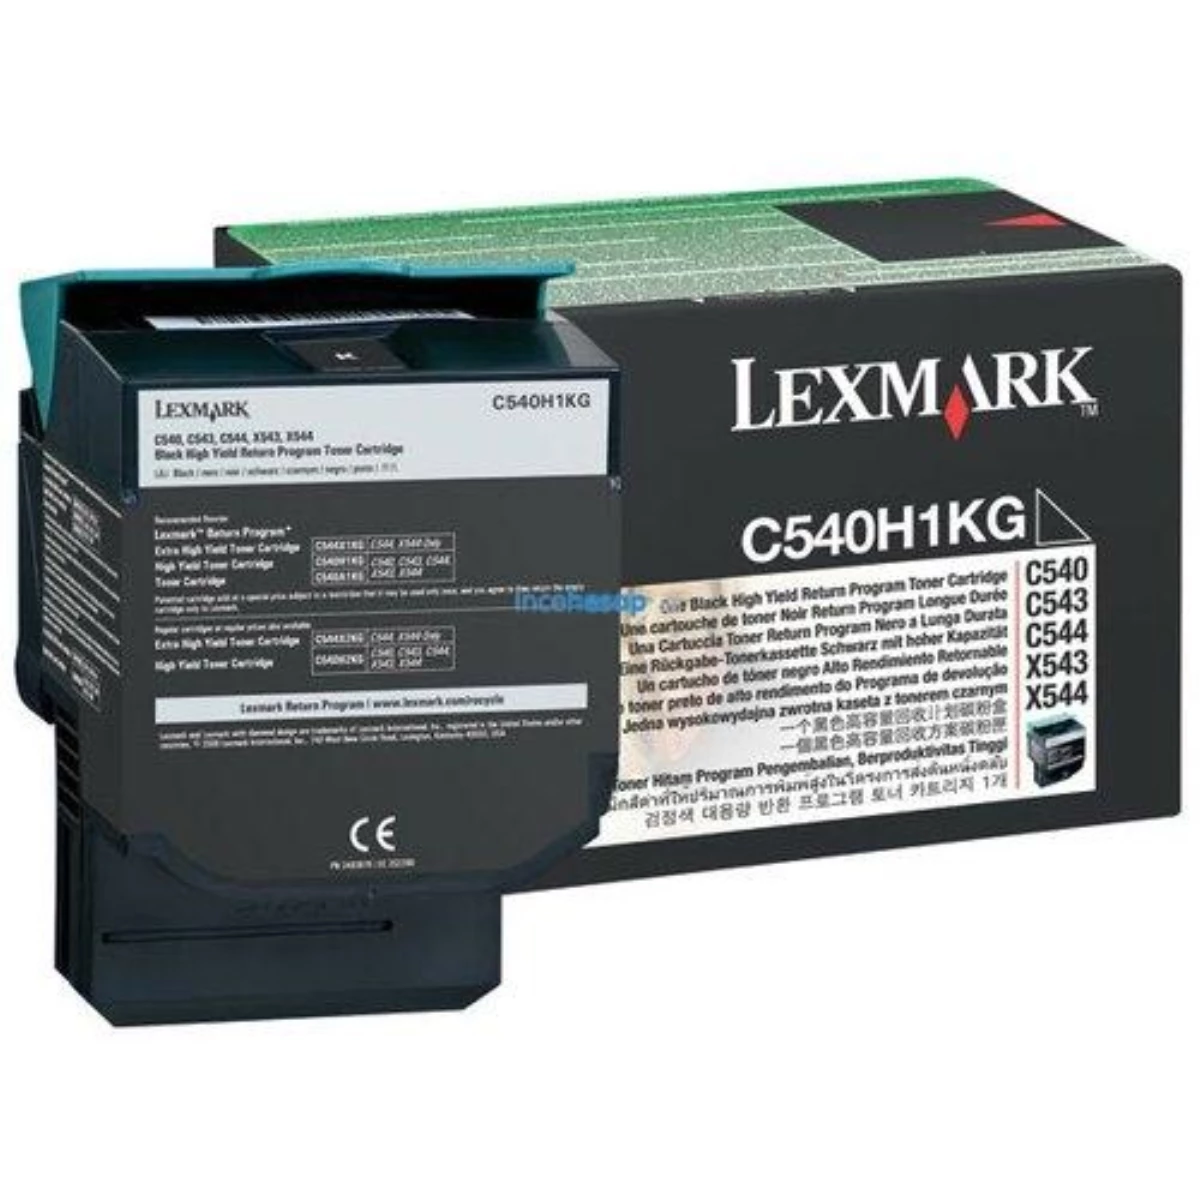 Lexmark C540h1kg Siyah Toner (C540/c543/c544)2.5k